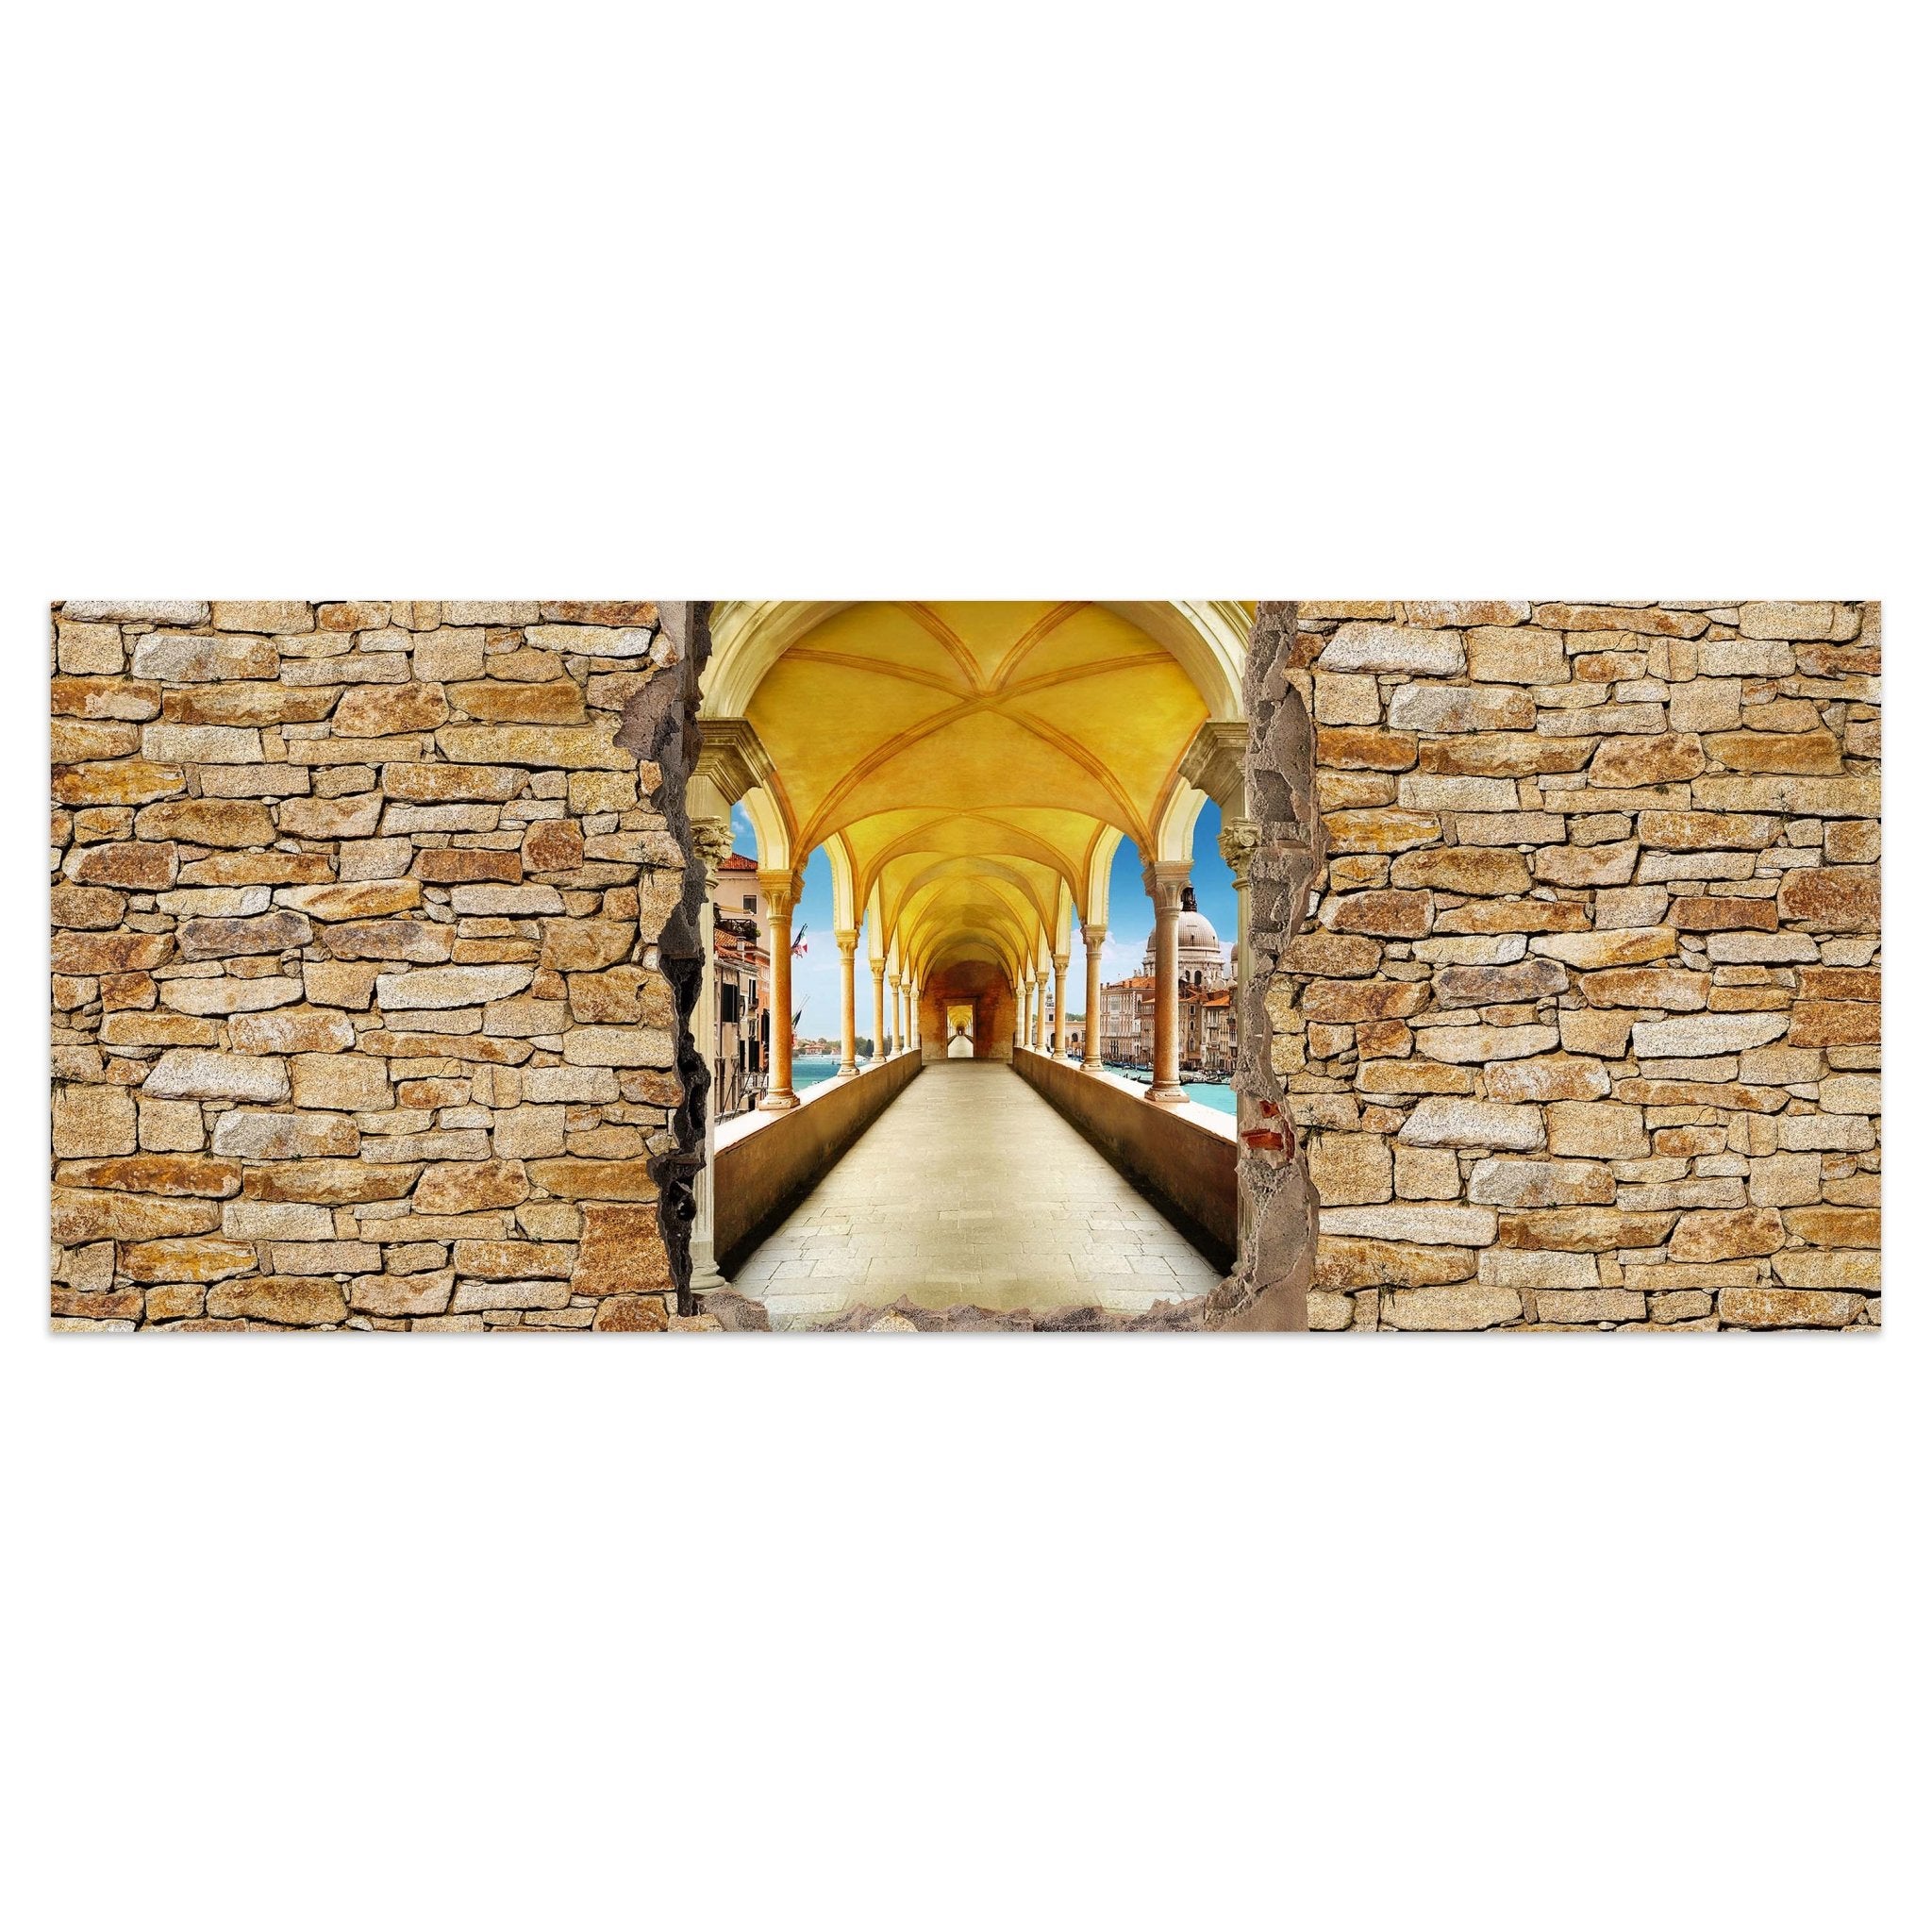 Leinwandbild Mauerloch mit Tunnel M0574 kaufen - Bild 1